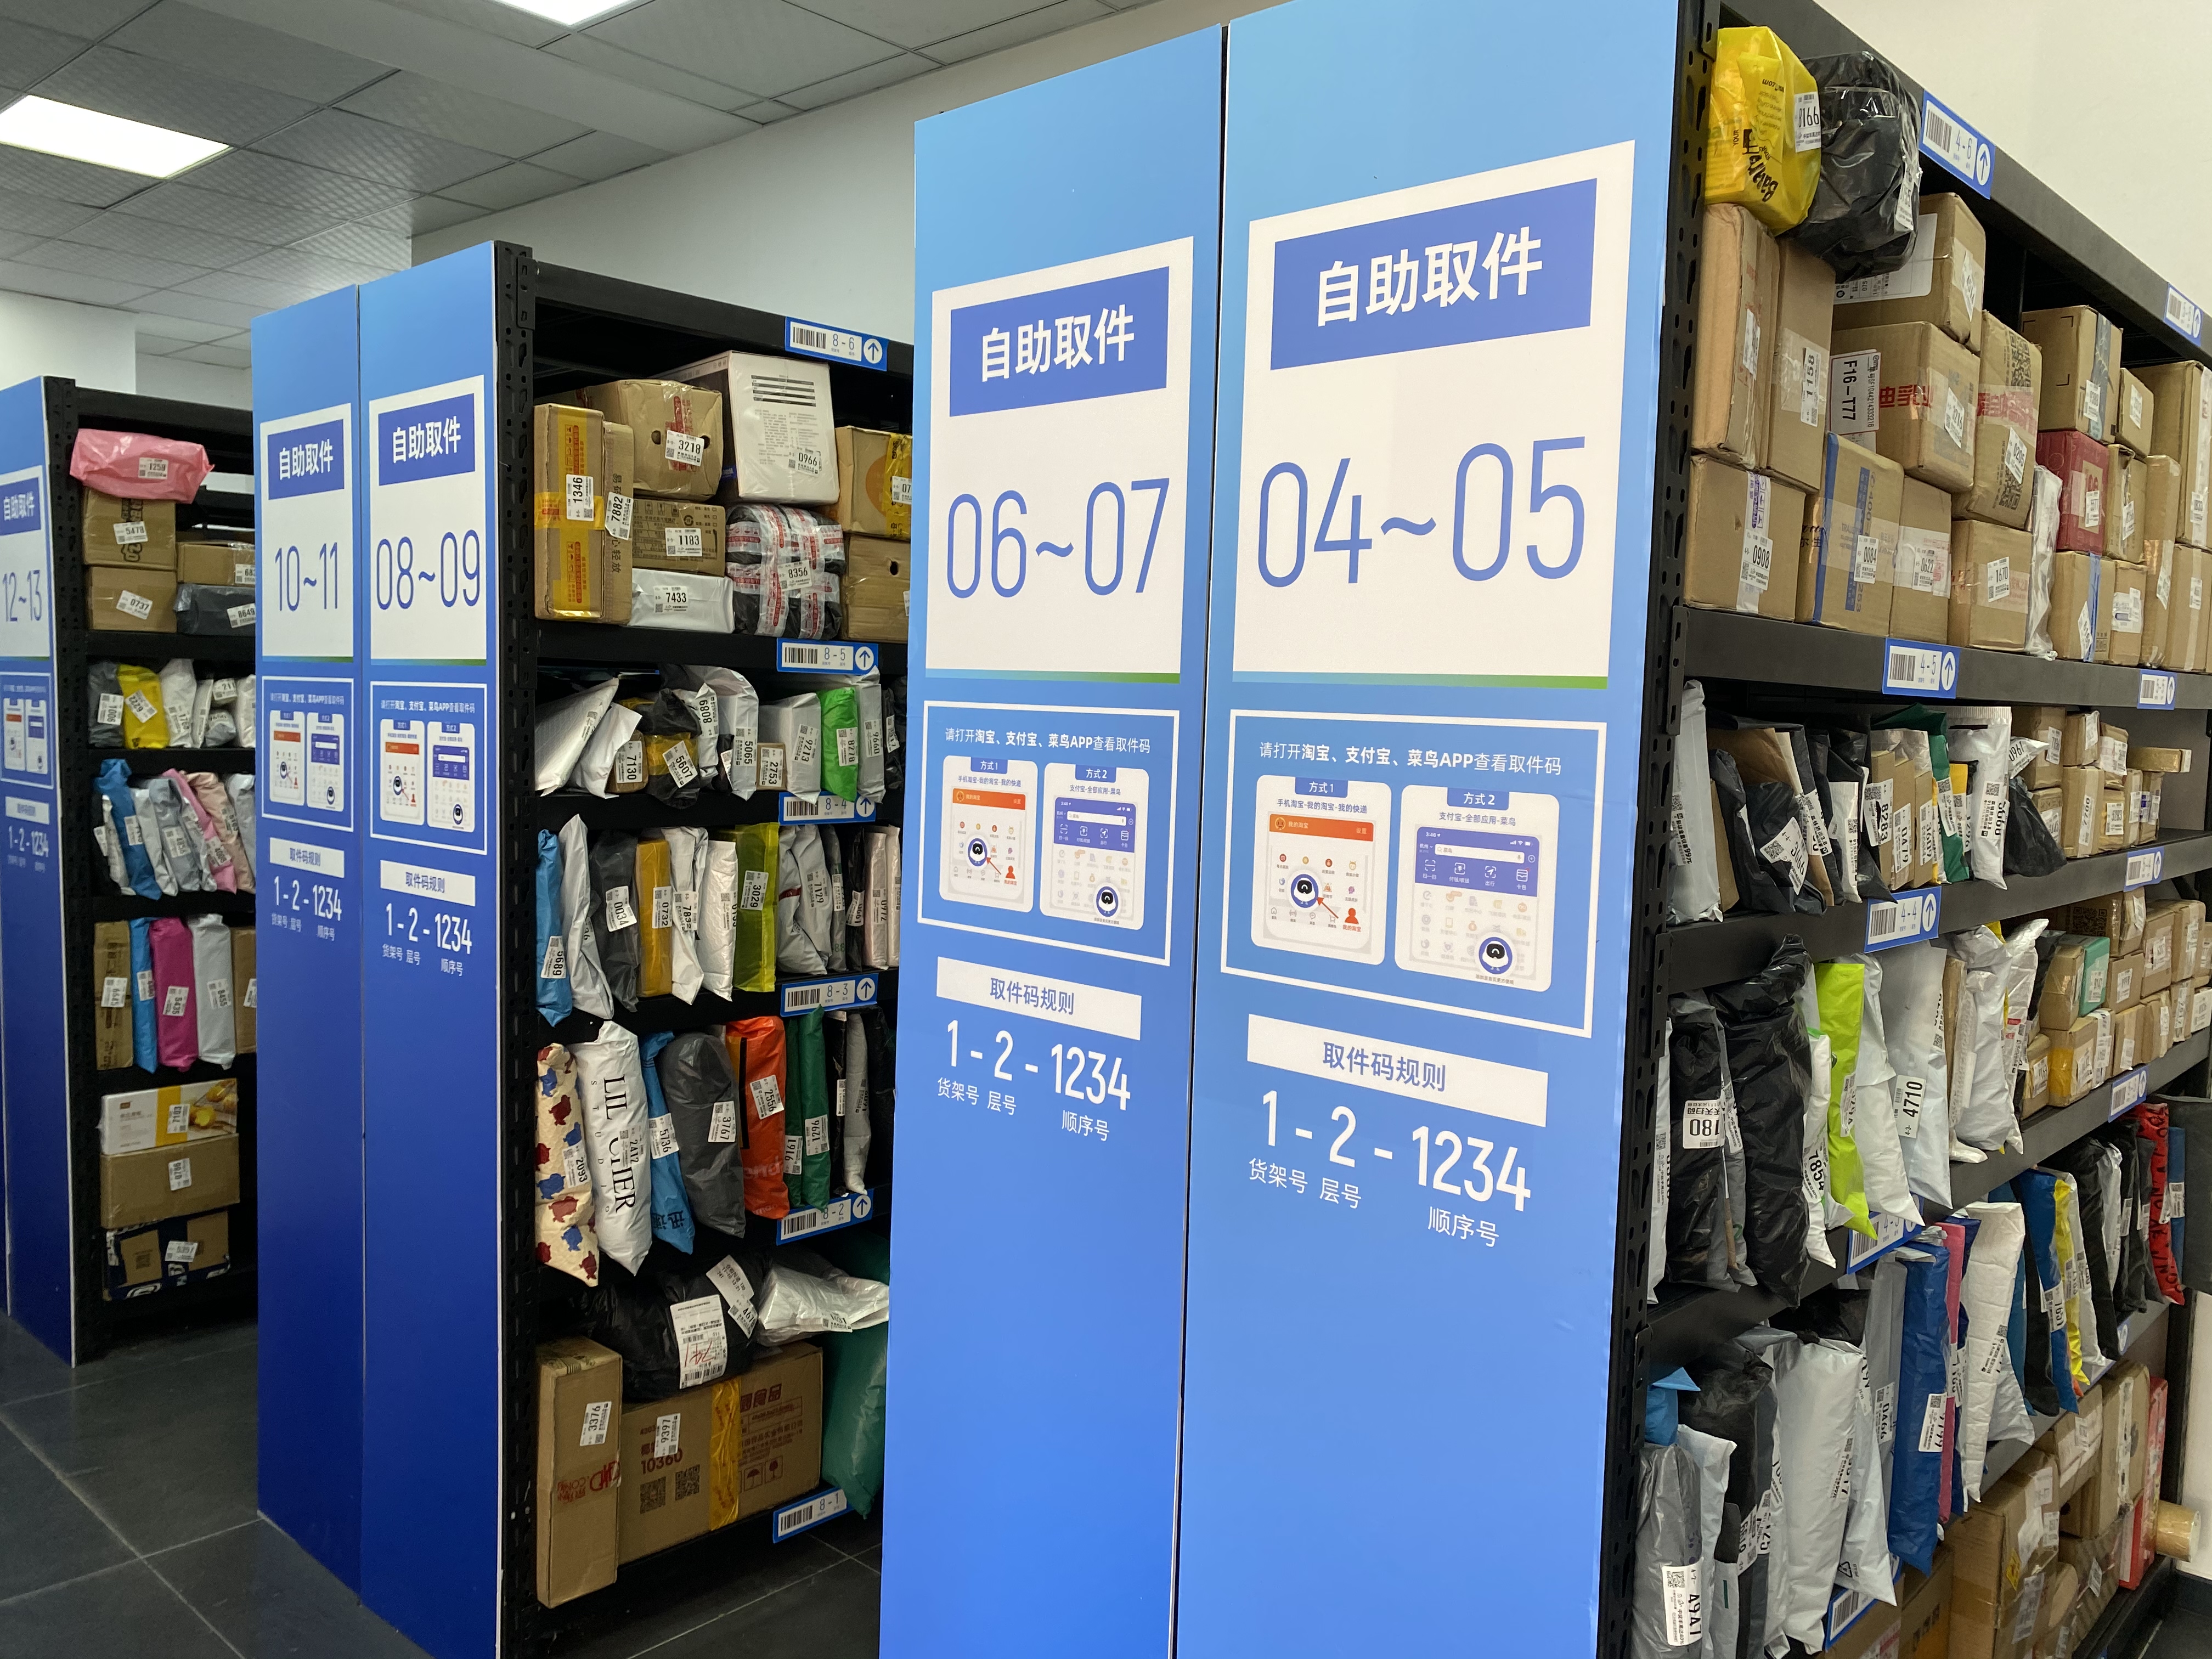 内部货架和货物按照图书馆的陈列方式摆放 澎湃新闻记者 姚晓岚 图